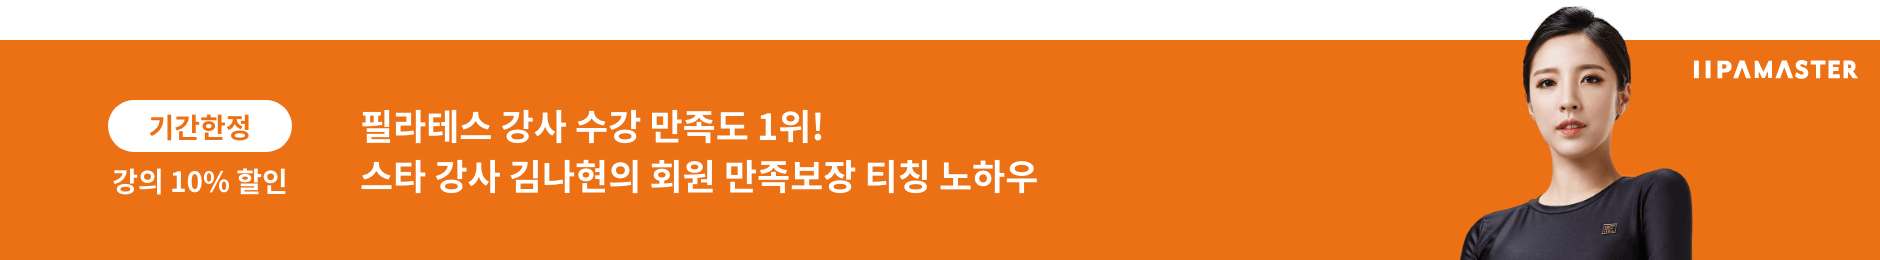 김나현의 매트 필라테스 티칭 커뮤니케이션 전략